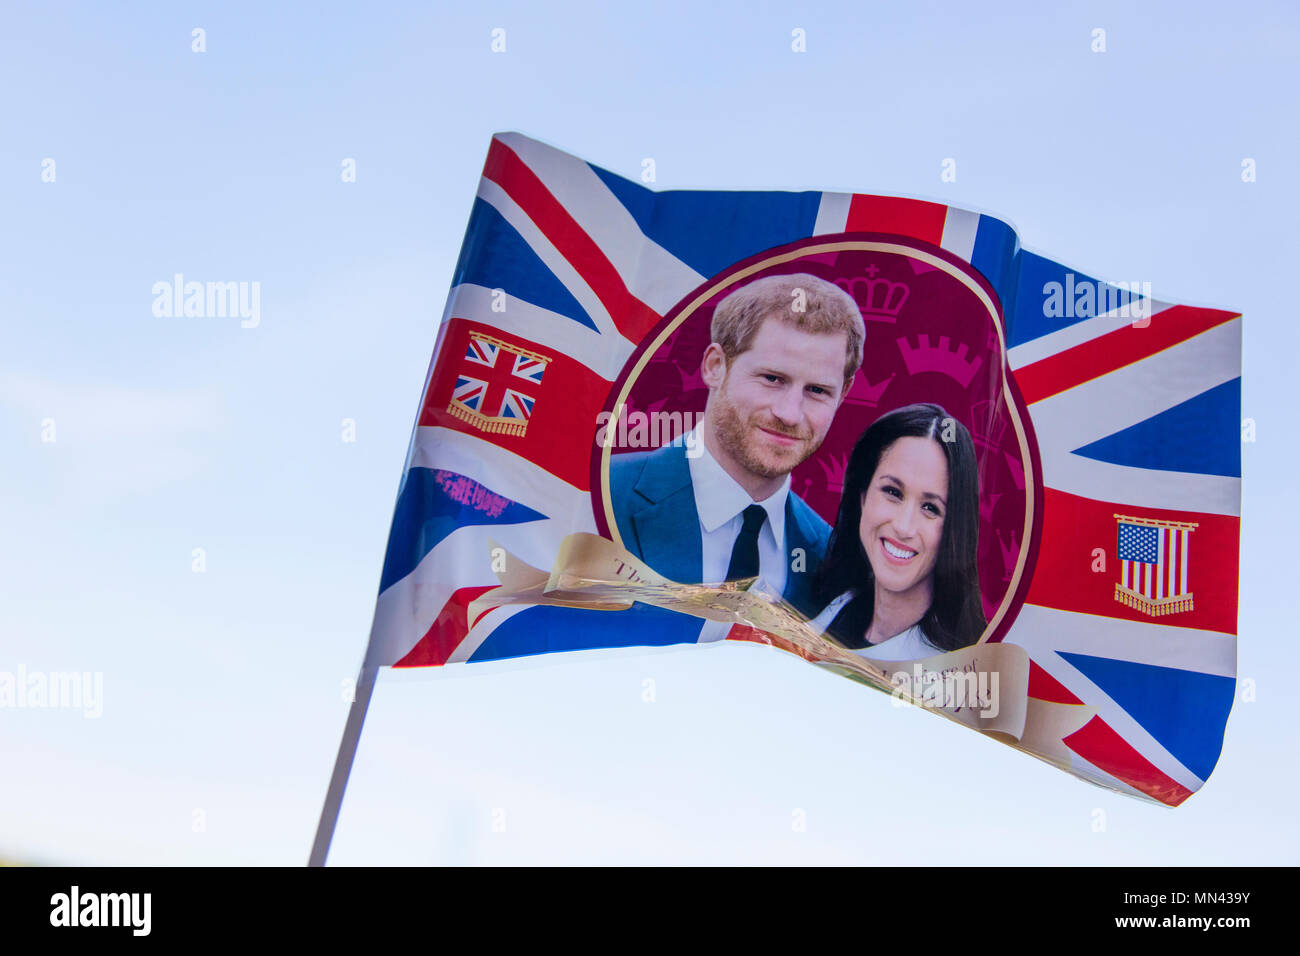 Londra, Regno Unito. 14 maggio 2018. Union Jack flag per celebrare le nozze reali del principe Harry e Meghan markle. Credito: goccia di inchiostro/Alamy Live News Foto Stock